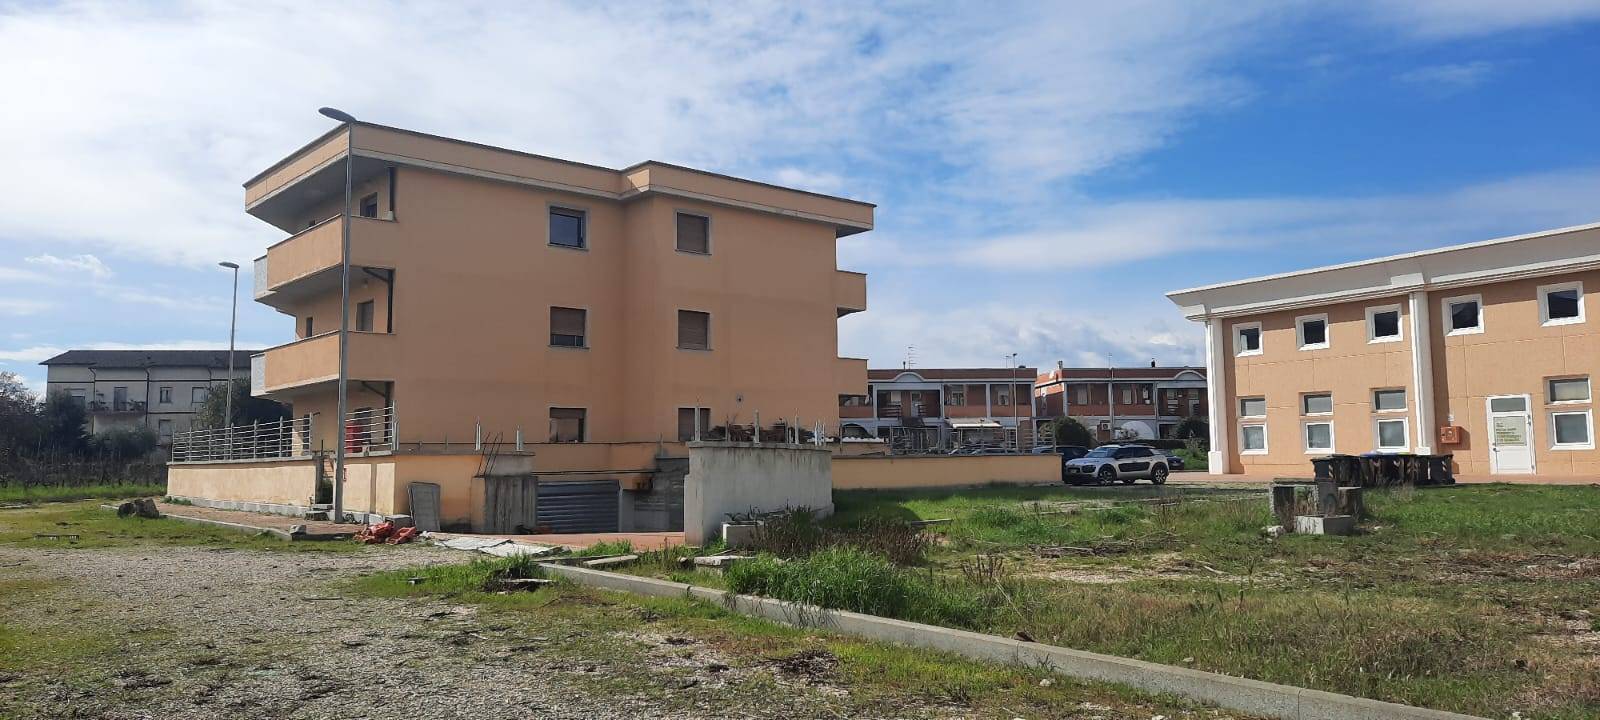 Appartamento in vendita a Attigliano, 4 locali, zona lino, prezzo € 72.000 | PortaleAgenzieImmobiliari.it